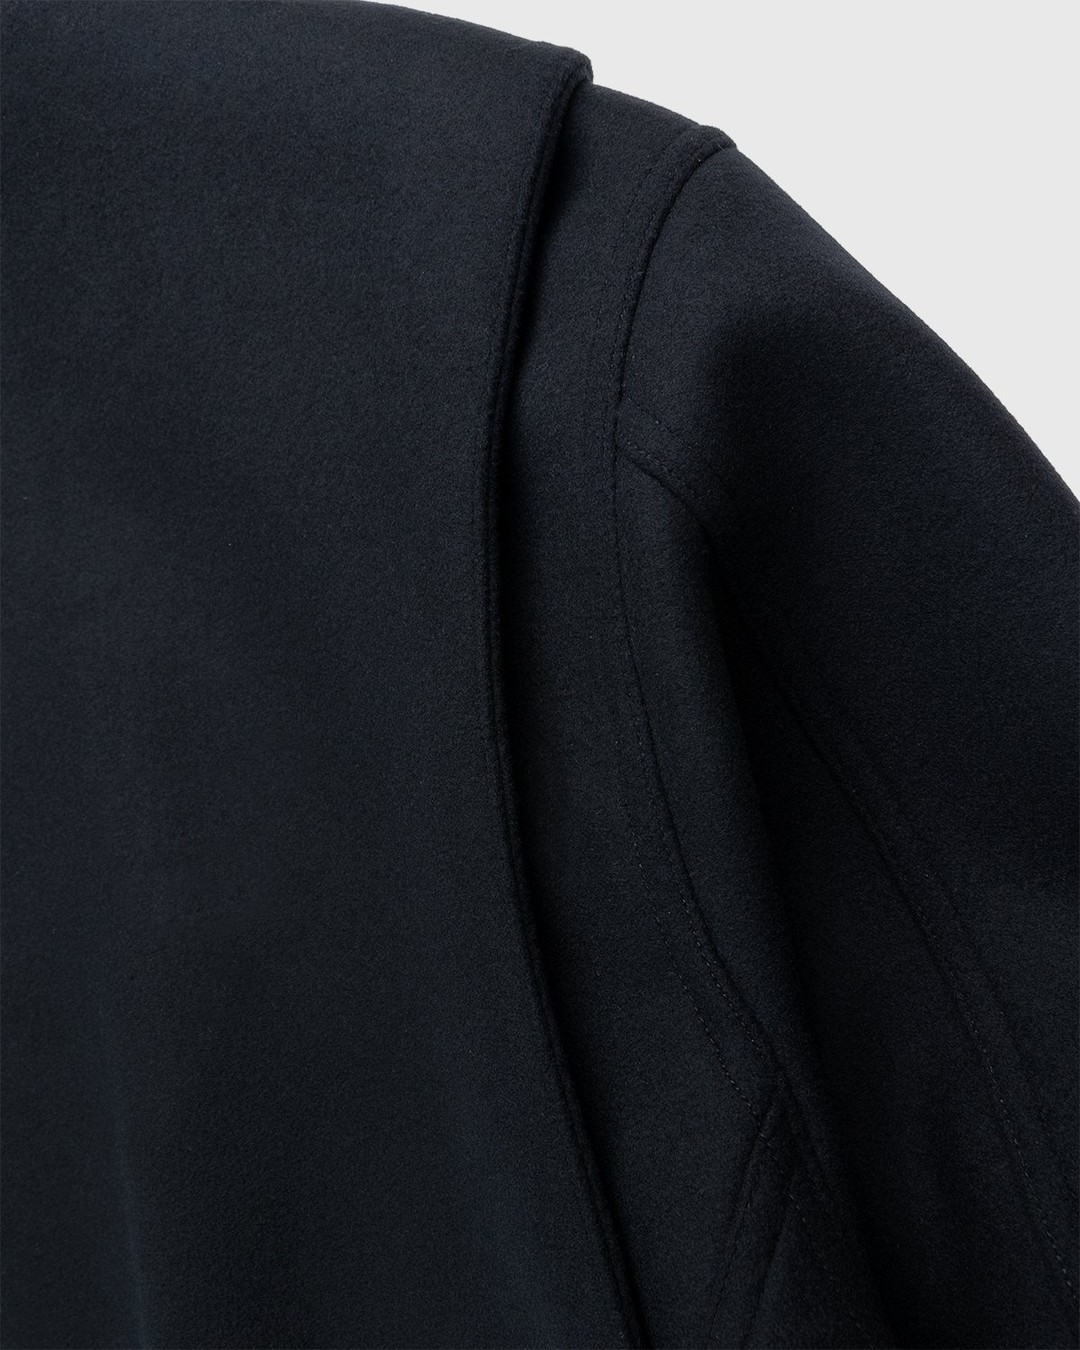 Jil Sander – Blouson Black - Outerwear - Black - Image 6